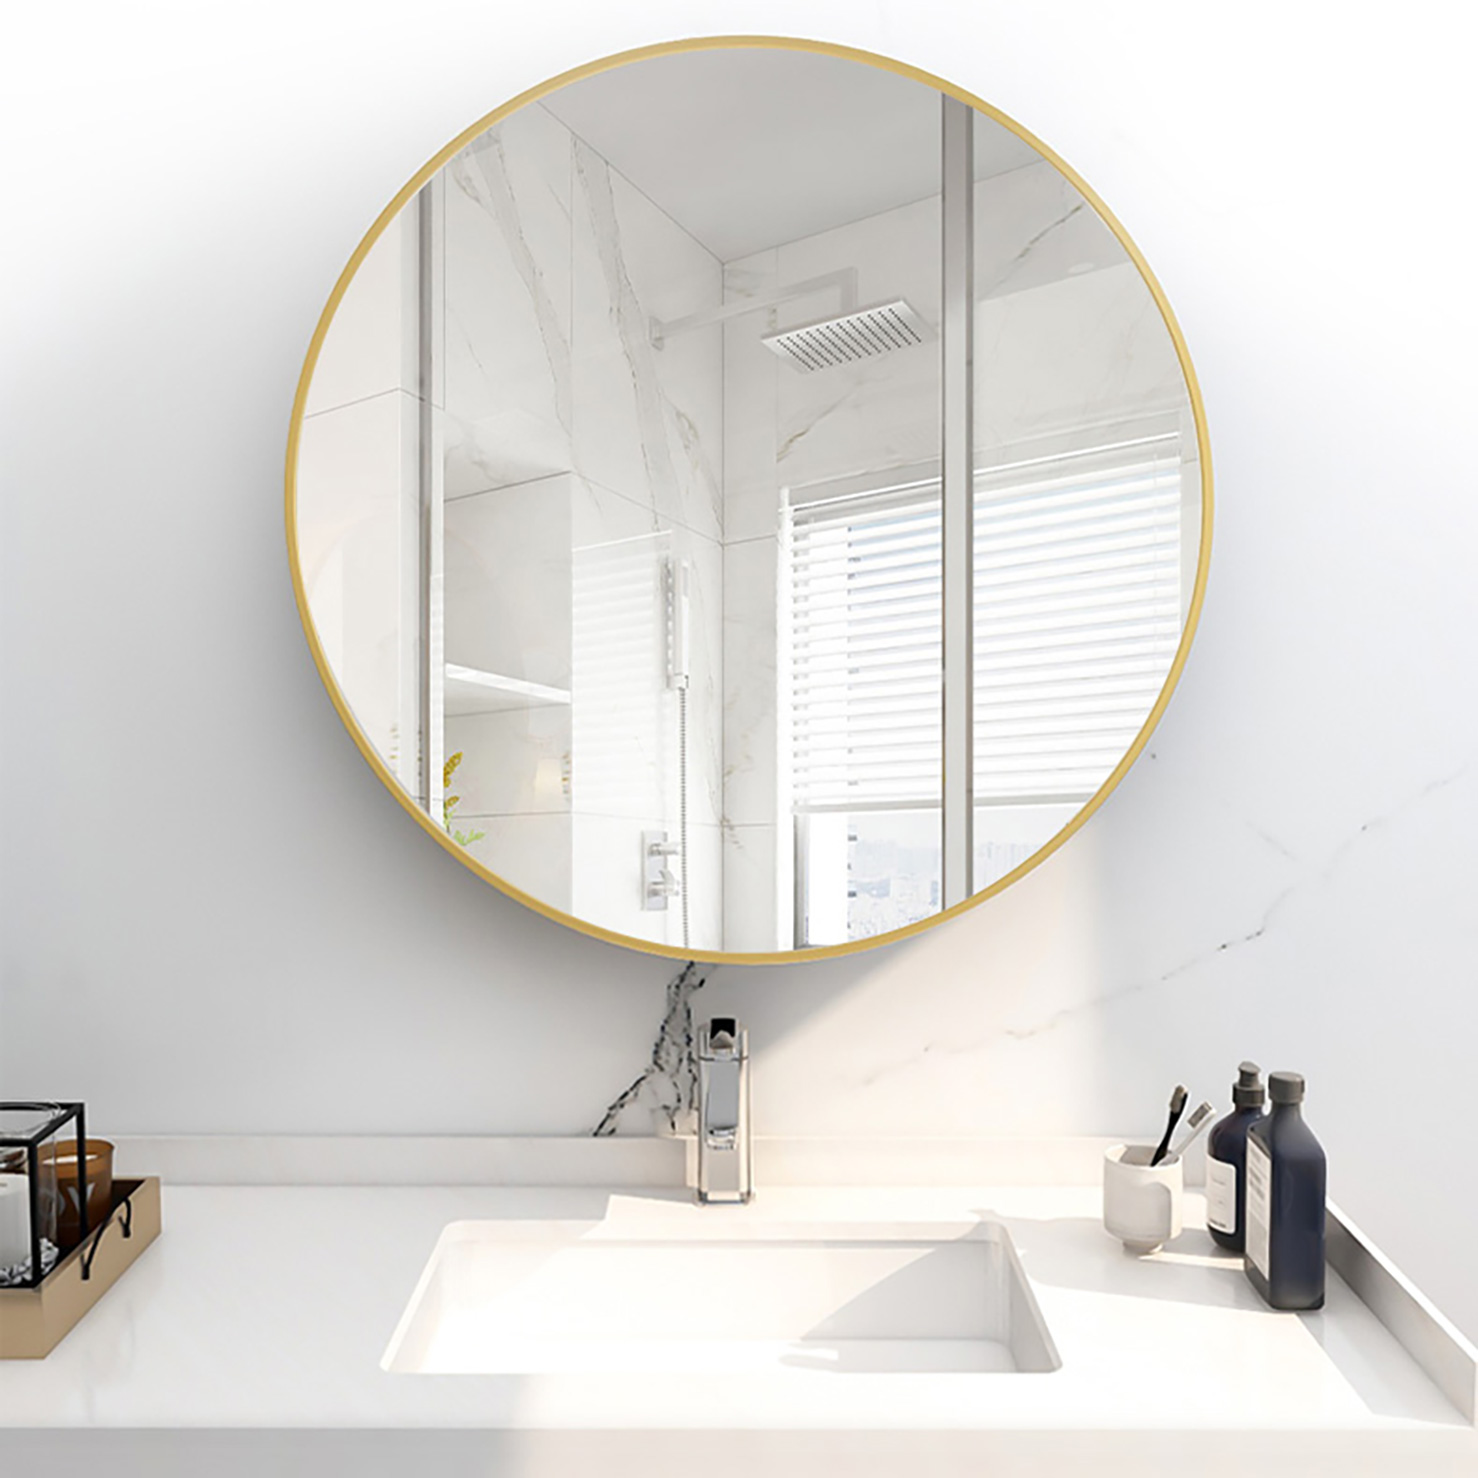 თანამედროვე-მრგვალი-მეტალის-ჩარჩო-ტუალეტის-სარკე--კედელზე დამონტაჟებული-შხაპი-ვერცხლის წრე-სარკე-აბაზანისთვის-12